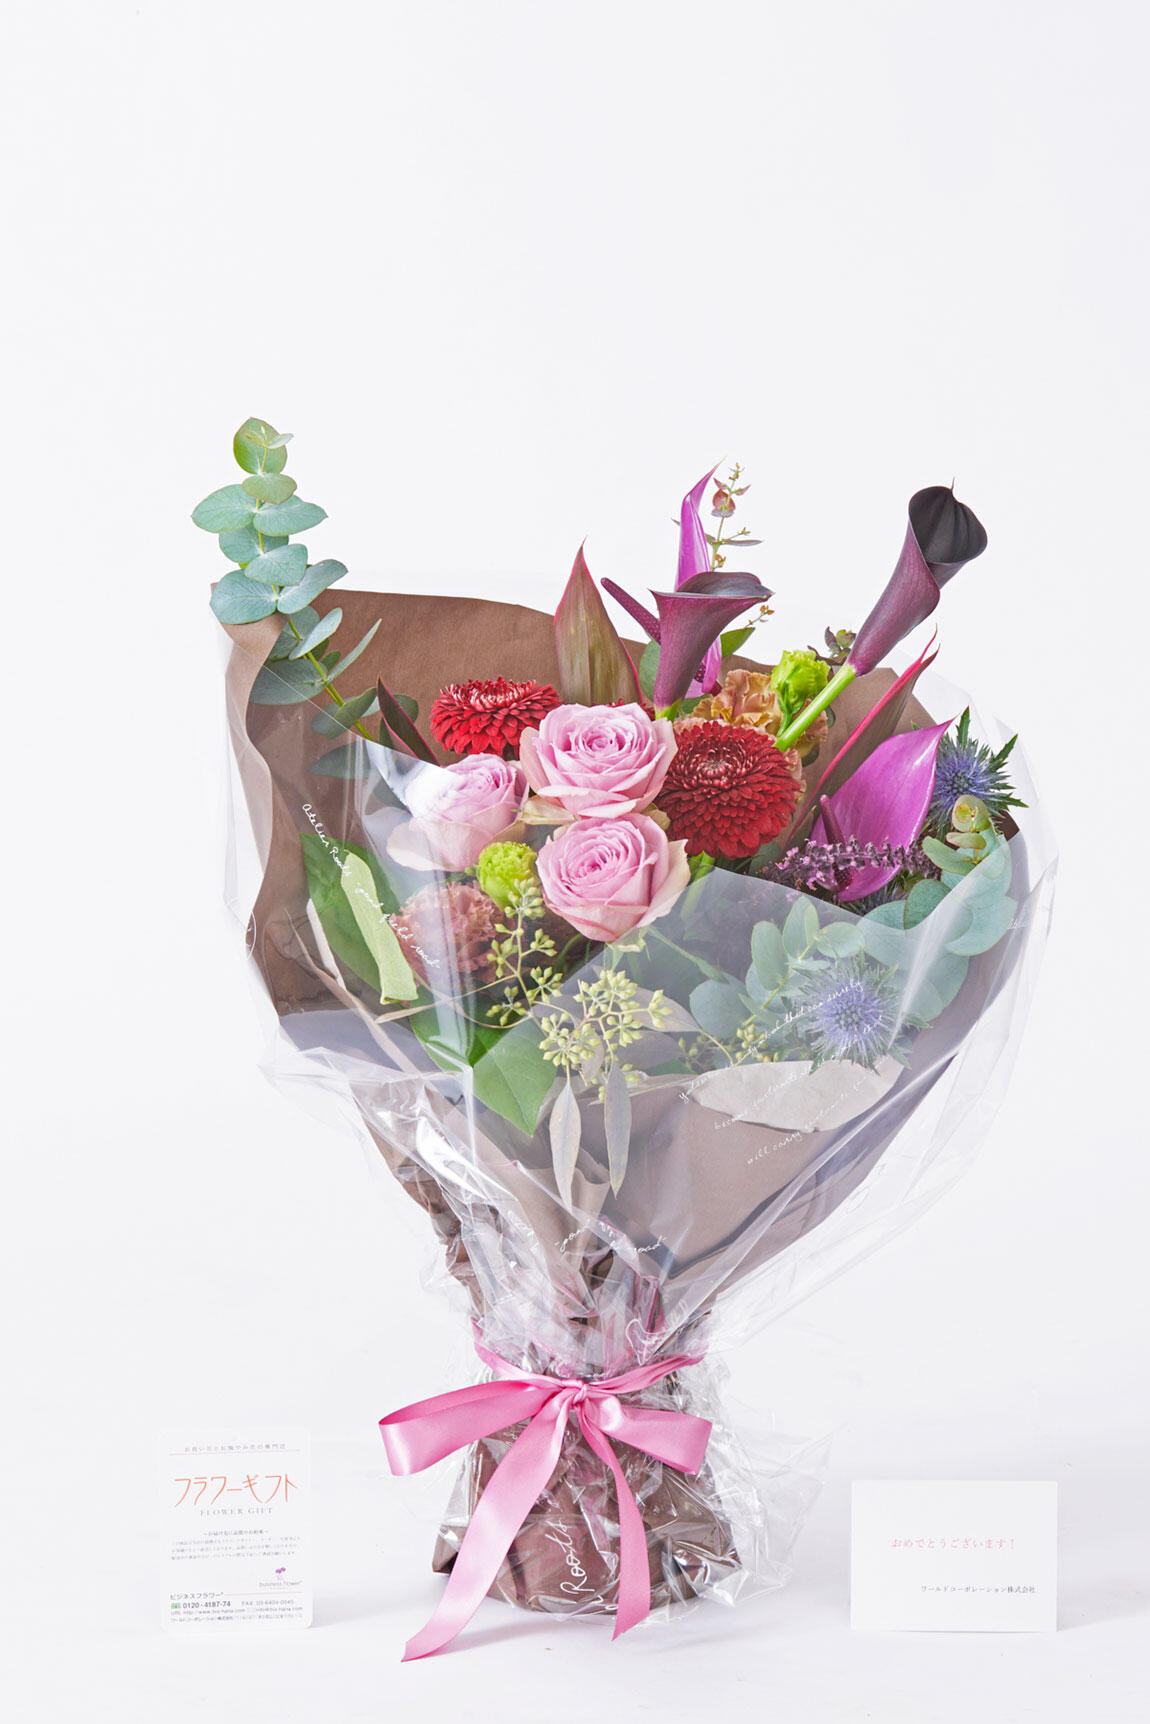 <p>お祝い花の通販サイトビジネスフラワーなら無料でメッセージカードをお付けできます。</p>